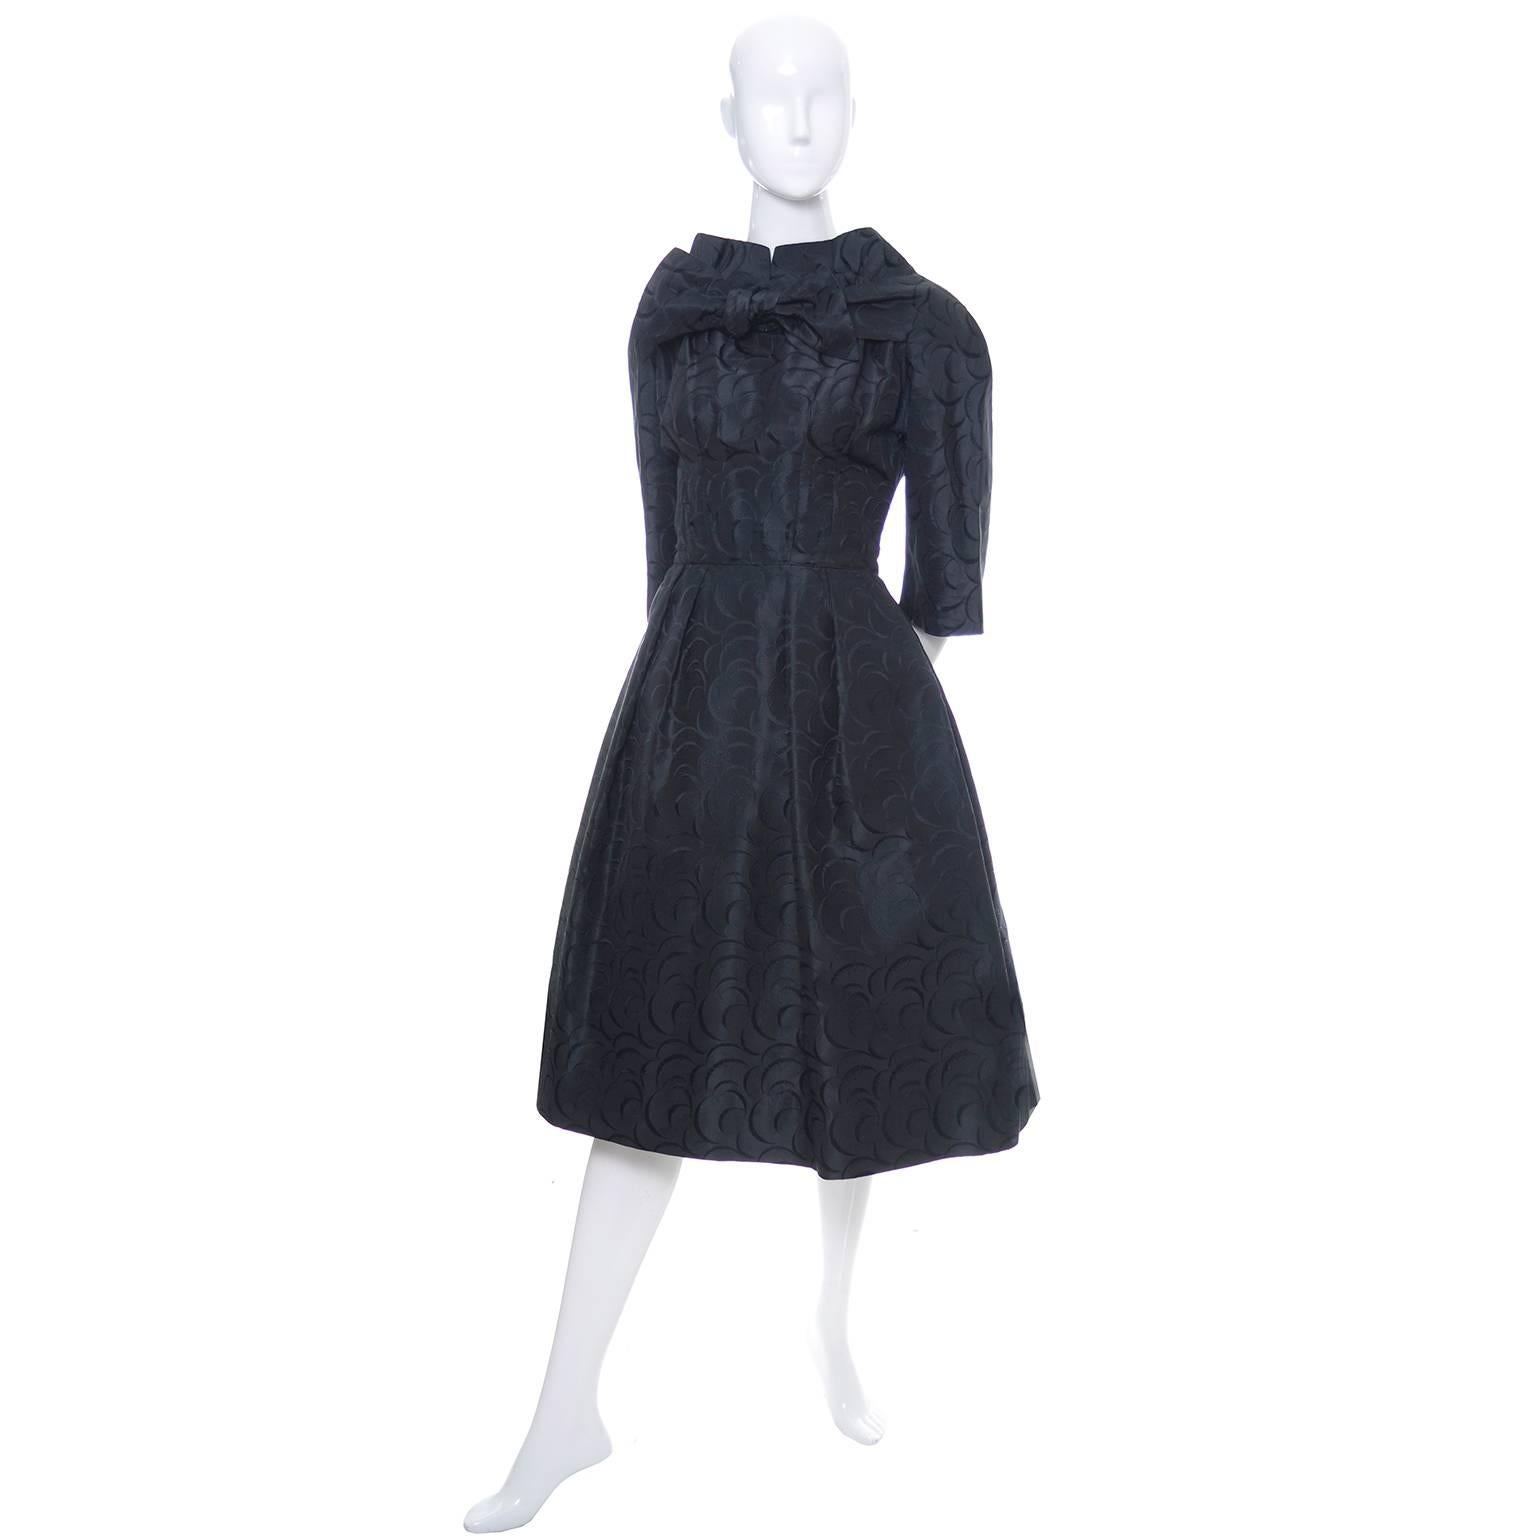 Werle Beverly Hills 1950's Vintage Dress Saks Fifth Avenue Black Patterned Satin 3